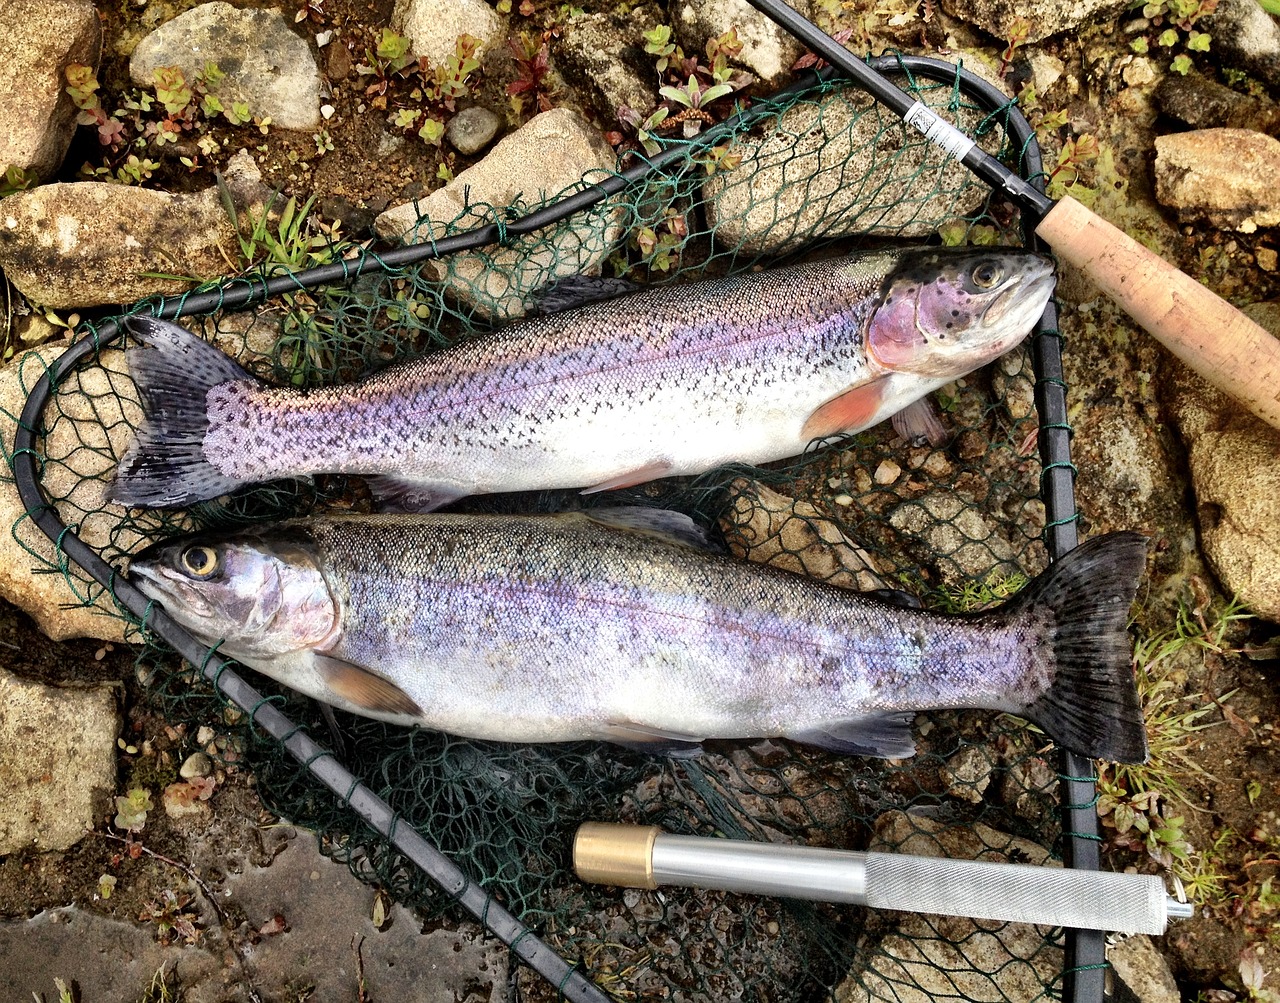 rainbow trout in net